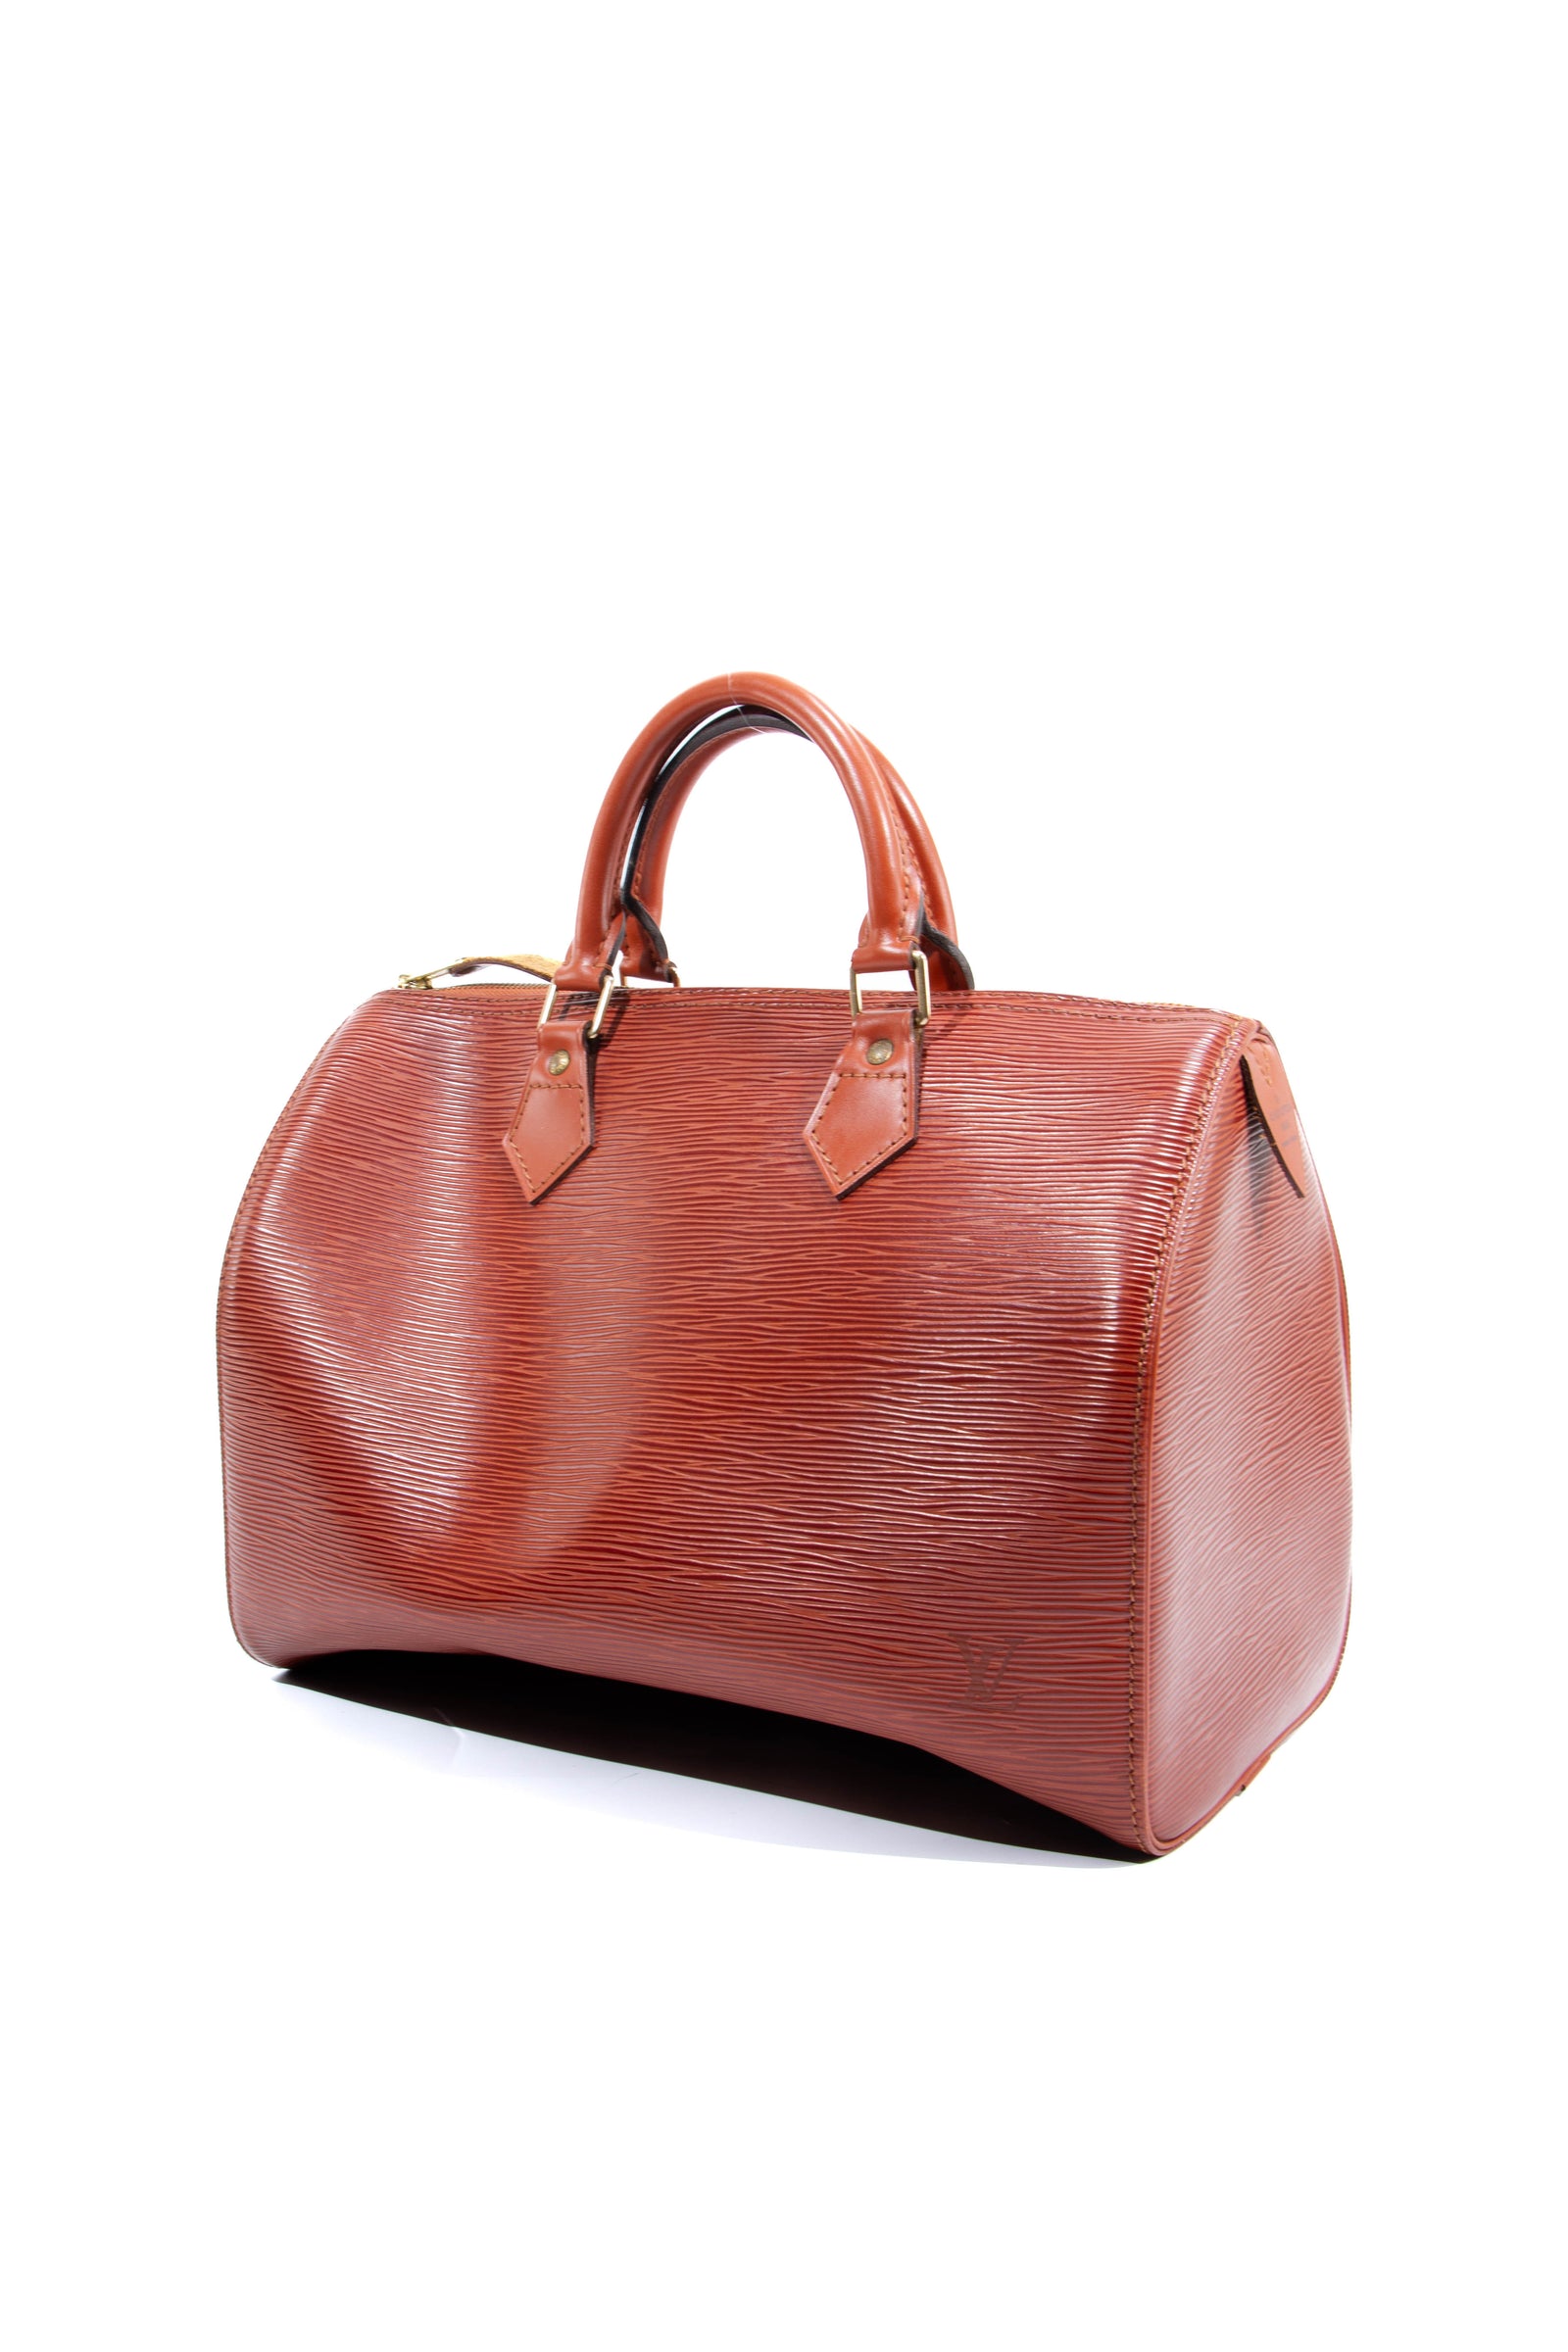 Louis Vuitton Vintage SPEEDY 30 Handbag for Sale in Fort Worth